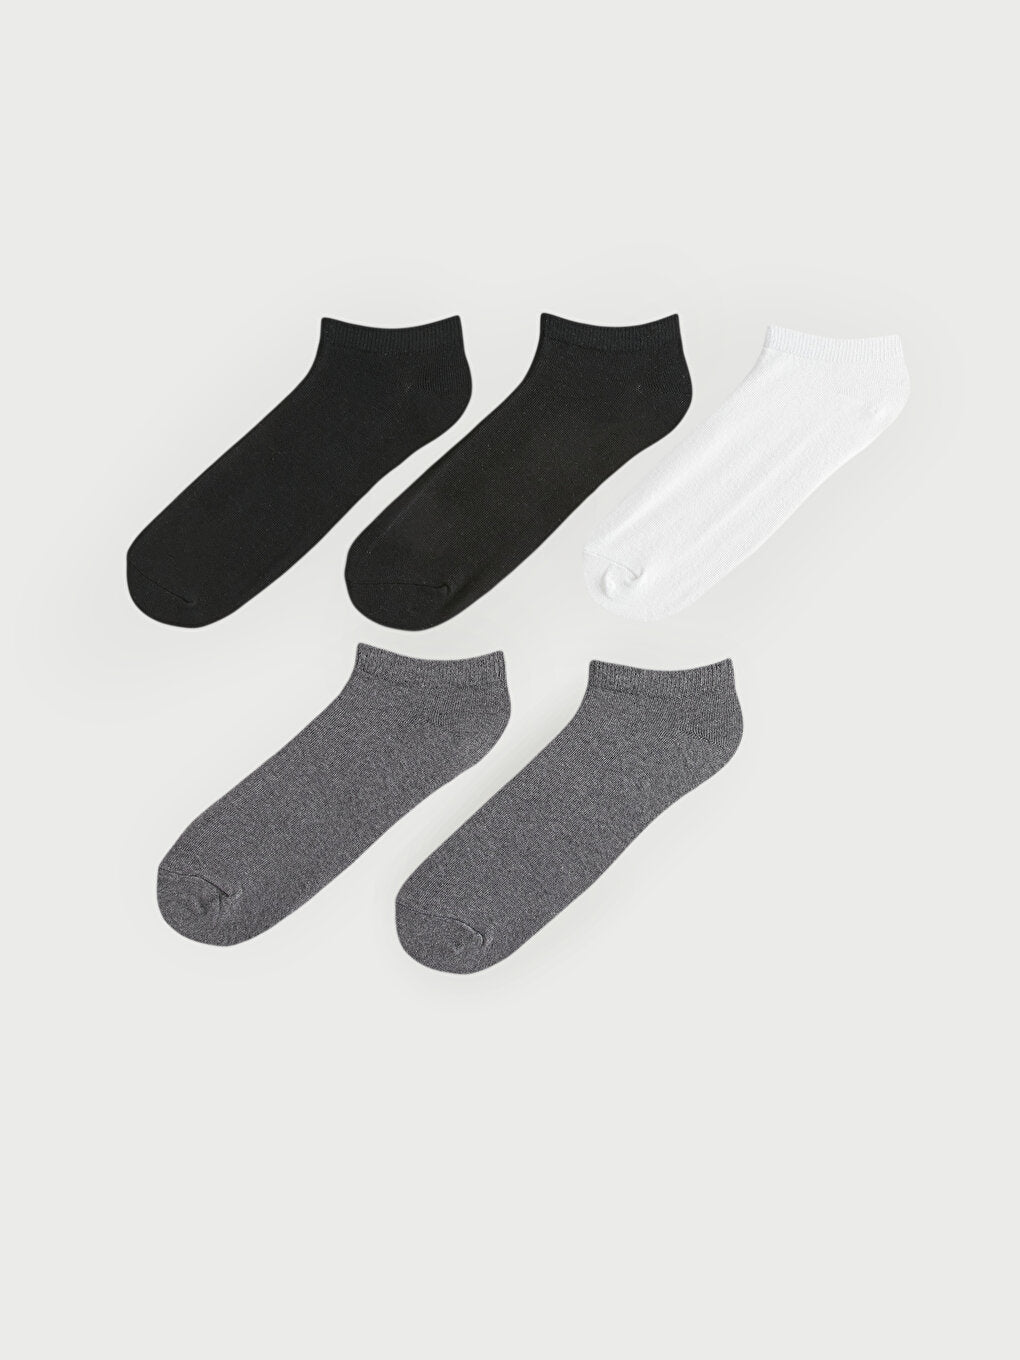 LCW ACCESSORIES Men's Booties Socks 5-pack